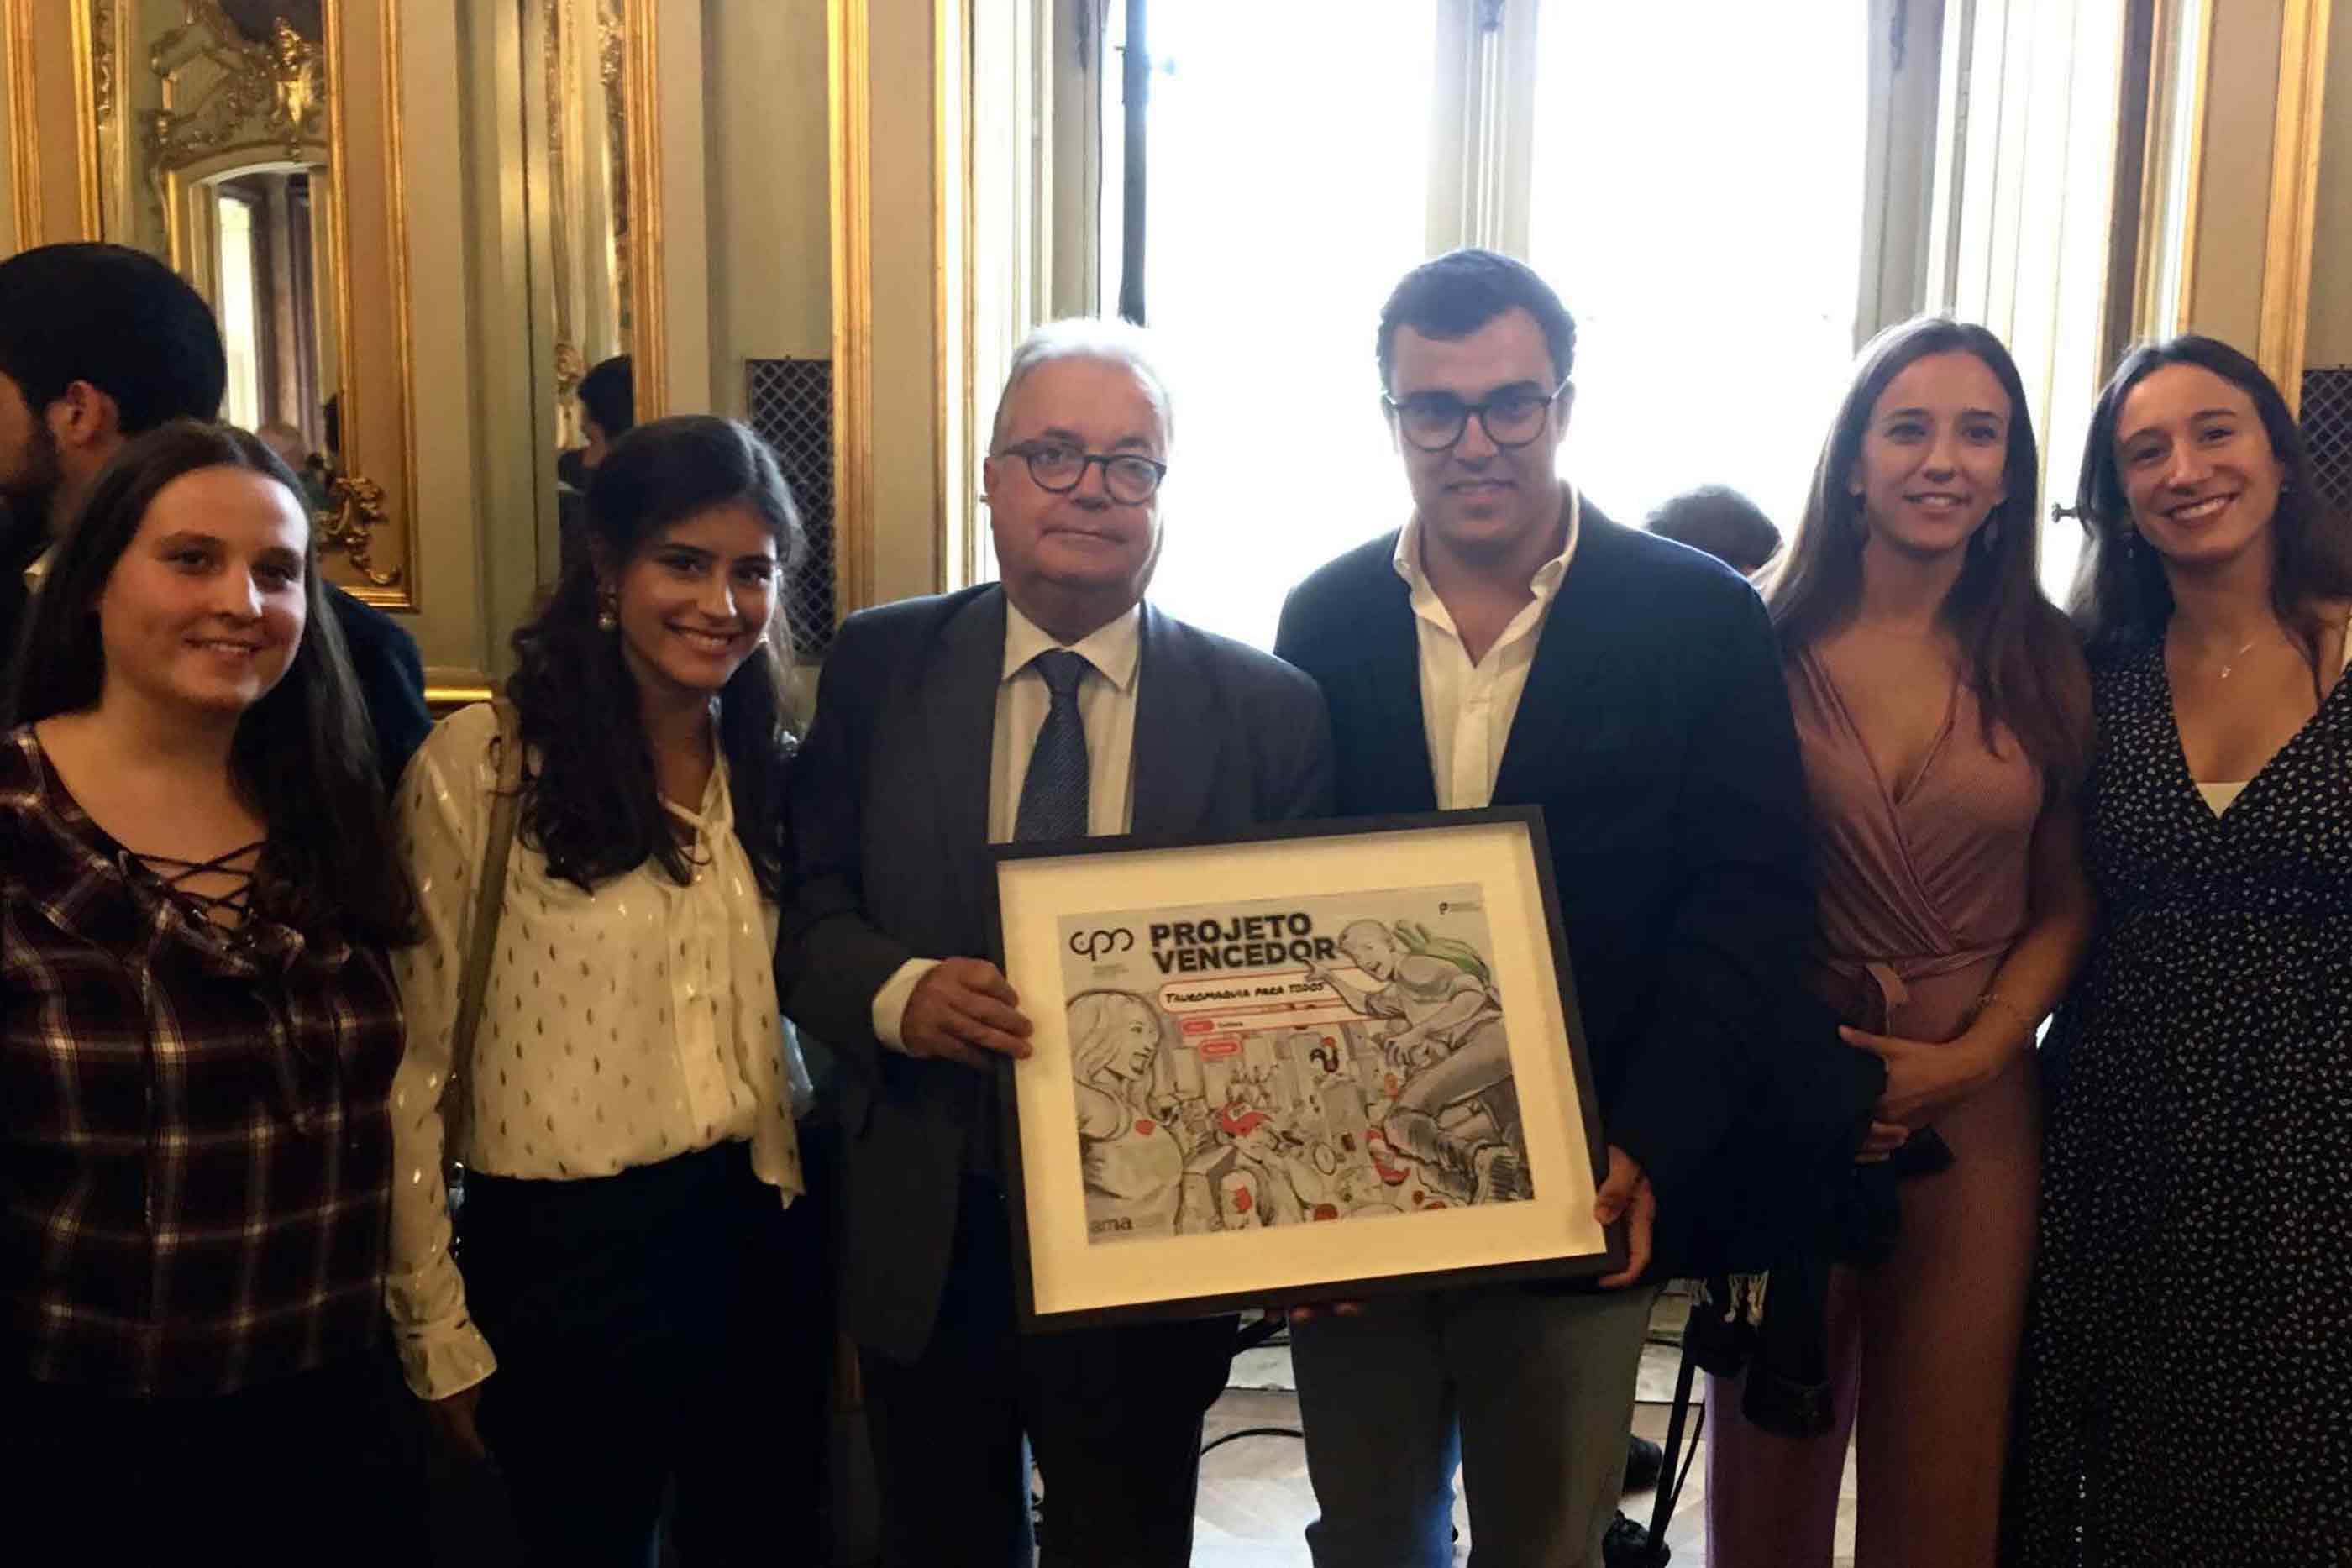 Entrega do prémio do projeto Tauromaquia para todos por parte do ex-ministro da cultura Luís Castro Mendes